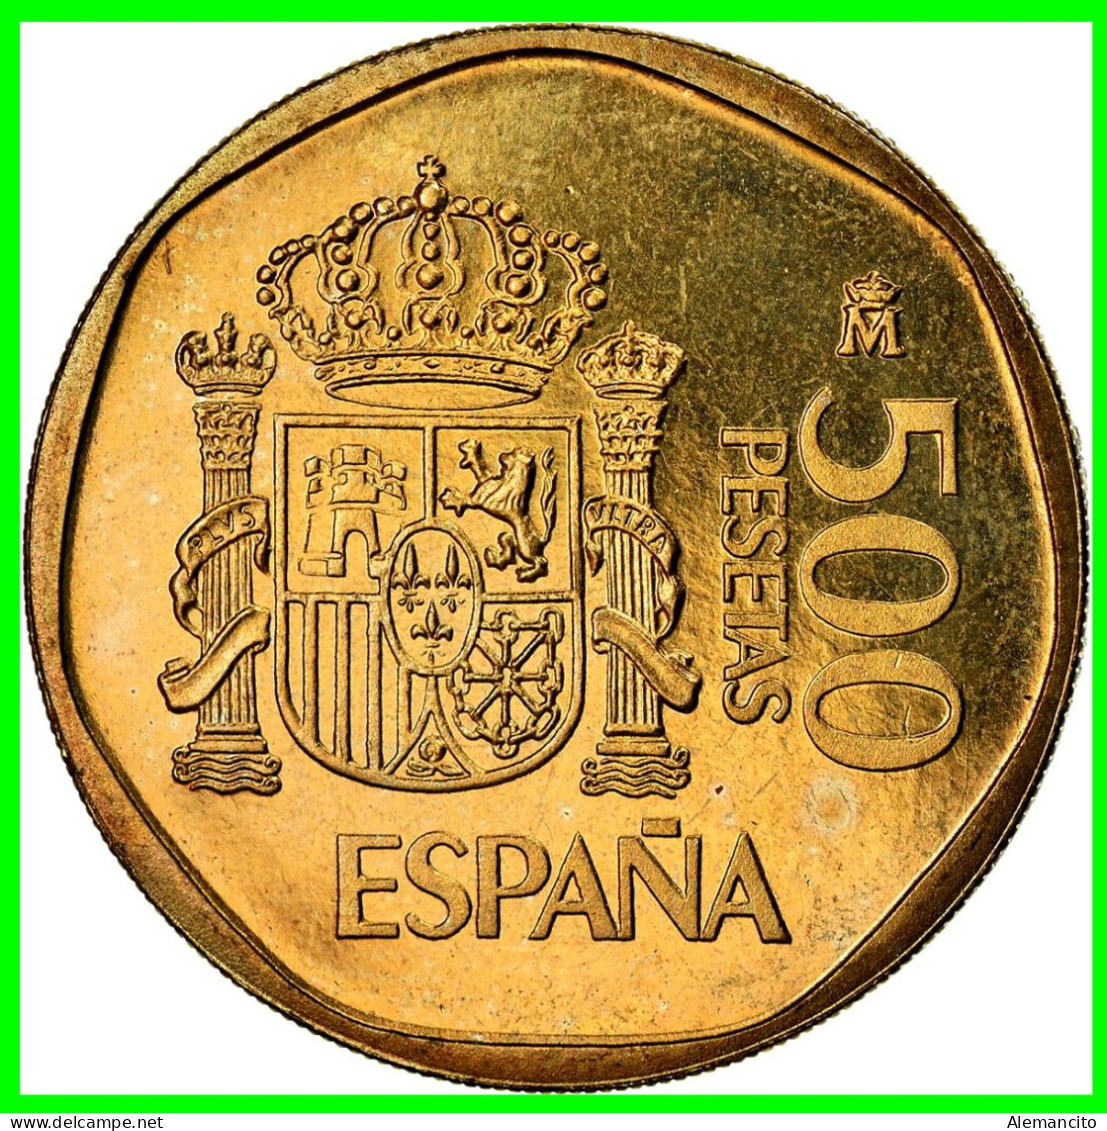 ESPAÑA ( EUROPA ) MONEDA DE JUAN CARLOS I REY. 500 PESETAS.  AÑO: 1987 CECA: MADRID METAL: ALUMINIO Y BRONCE, F.D.C. - 500 Pesetas